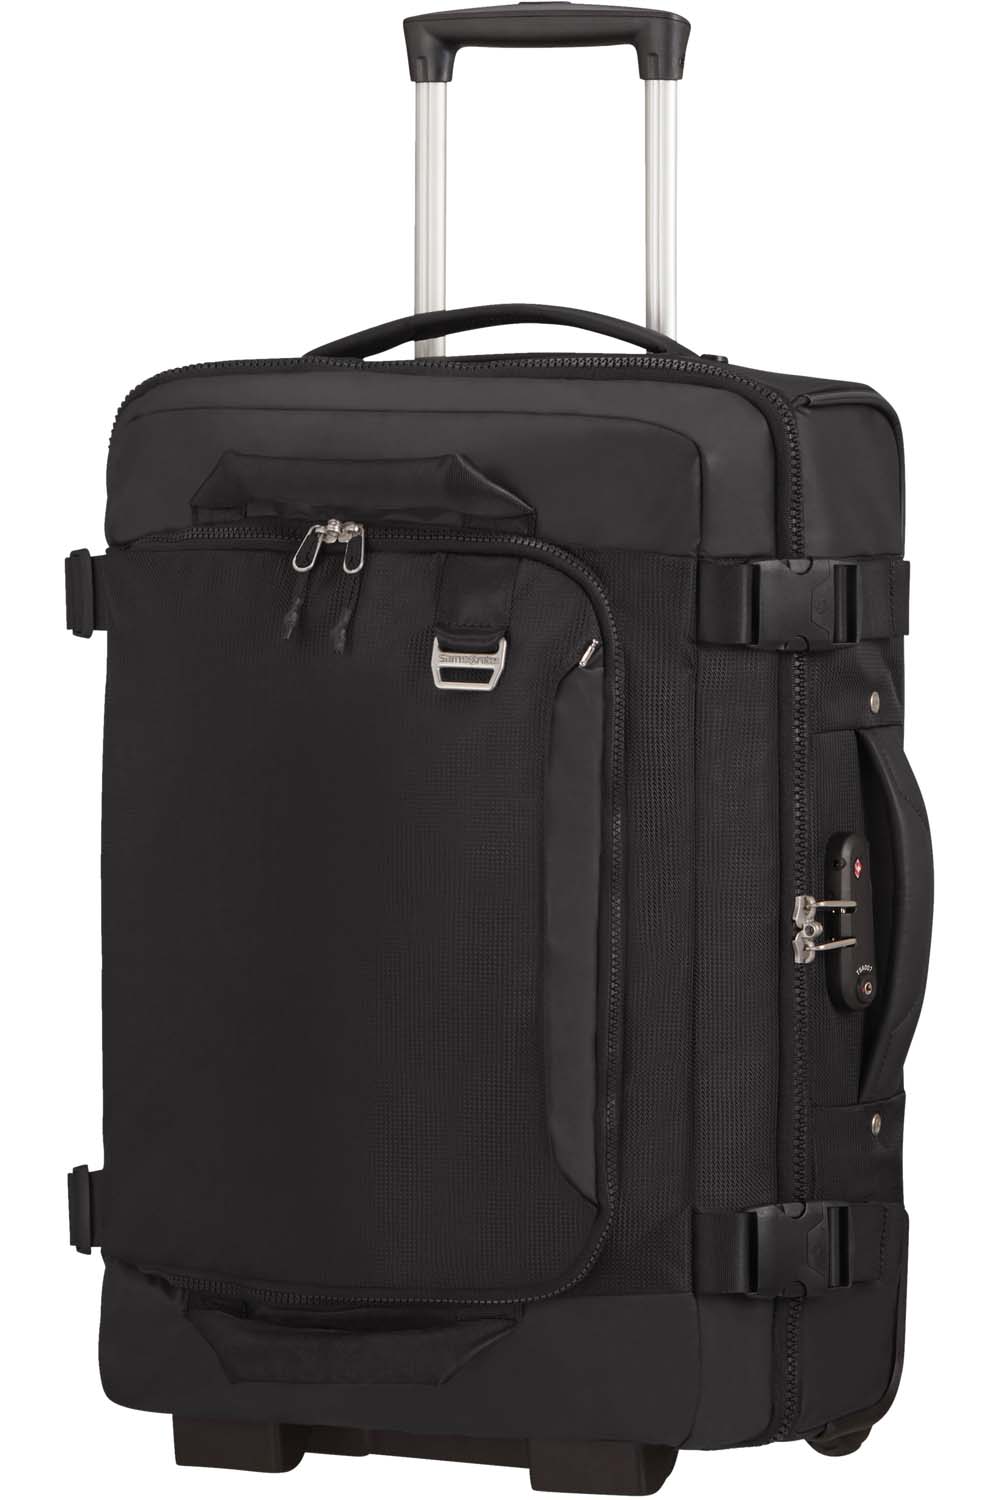 Samsonite Midtown Reisetasche/Rucksack auf Rollen 55cm, 15.6" schwarz |  jetzt online kaufen auf Koffer.de ✓